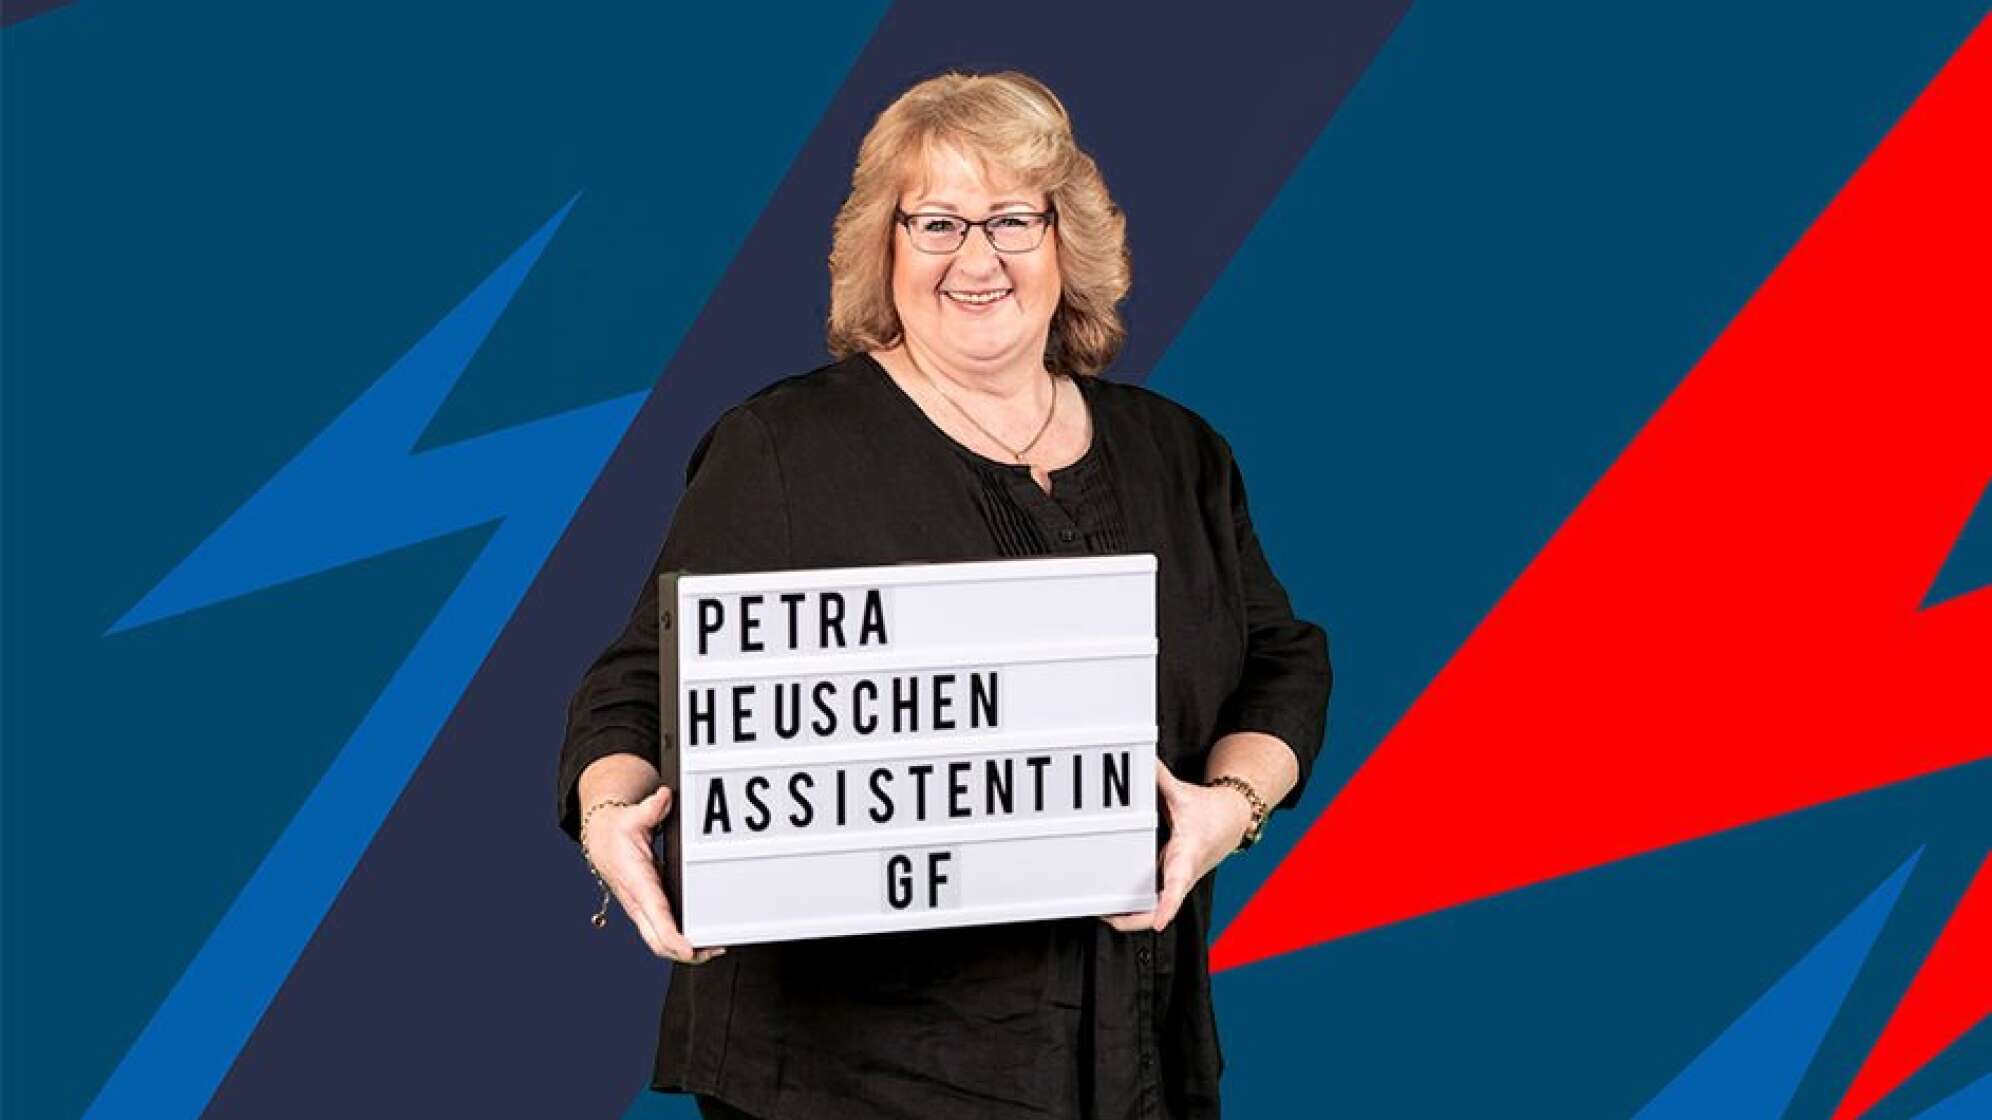 Petra Heuschen